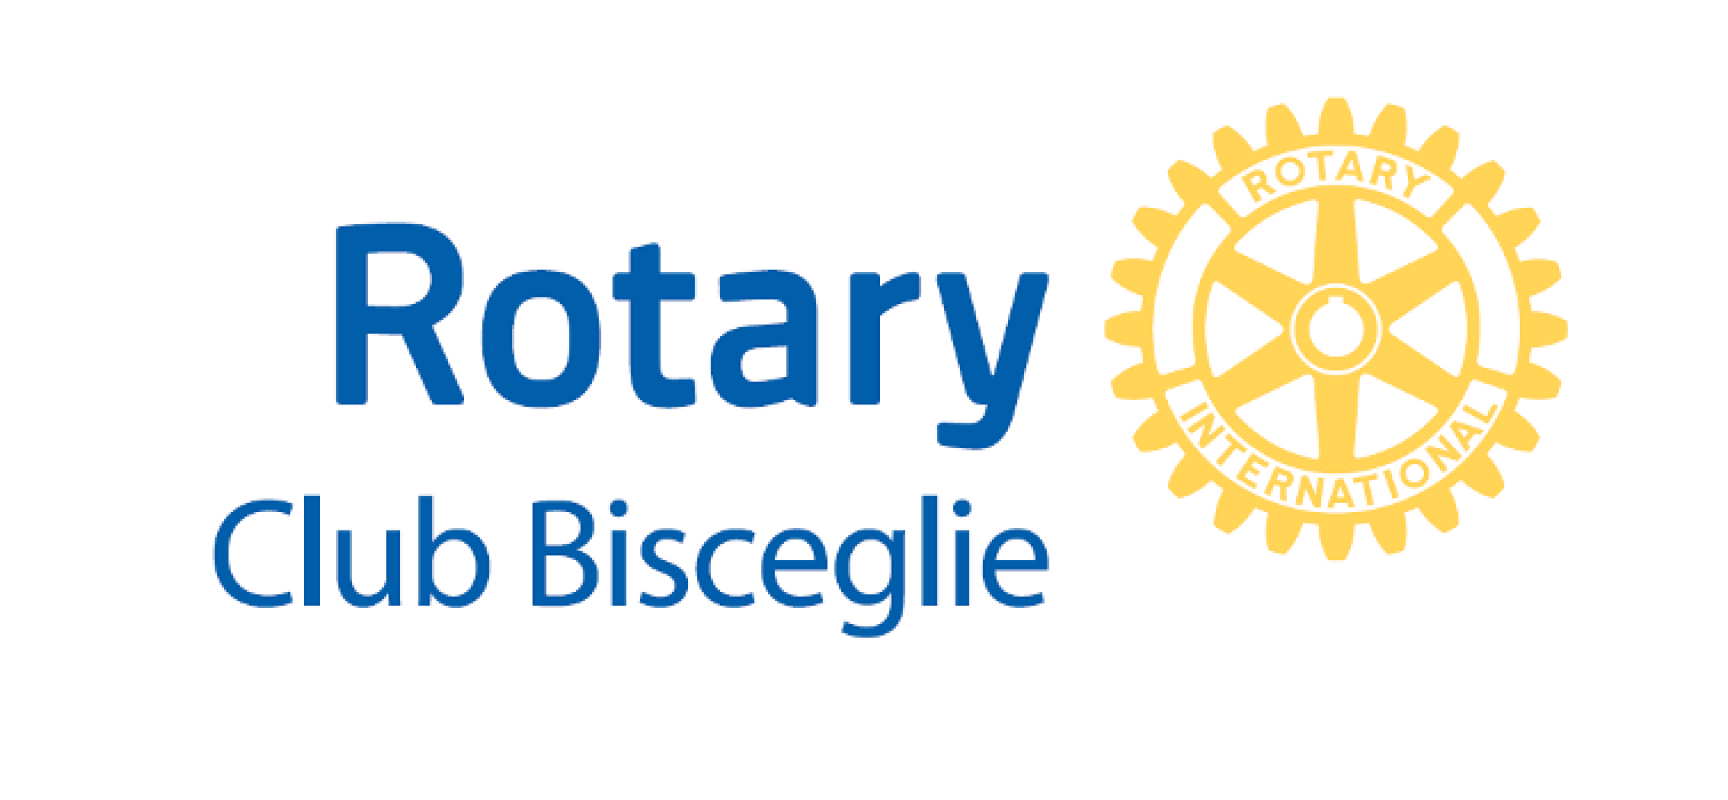 Rotary Club Bisceglie, Premio Professionalità a porte chiuse / DETTAGLI